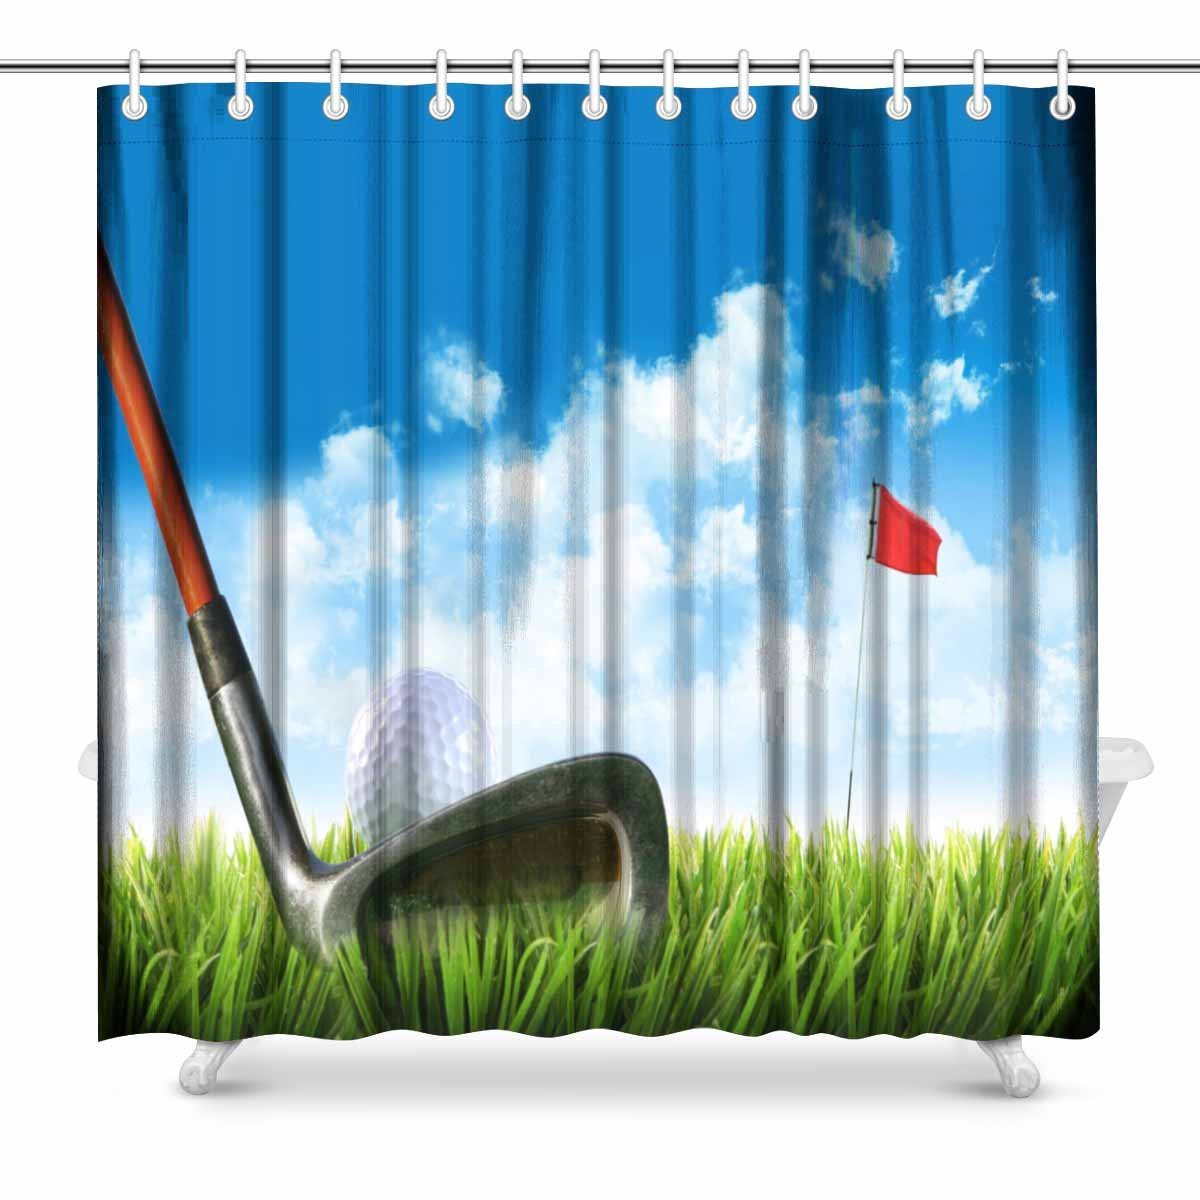 Golf Bathroom Decor
 Aplysia Golf Ball with Tee in the Grass Against Blue Sky